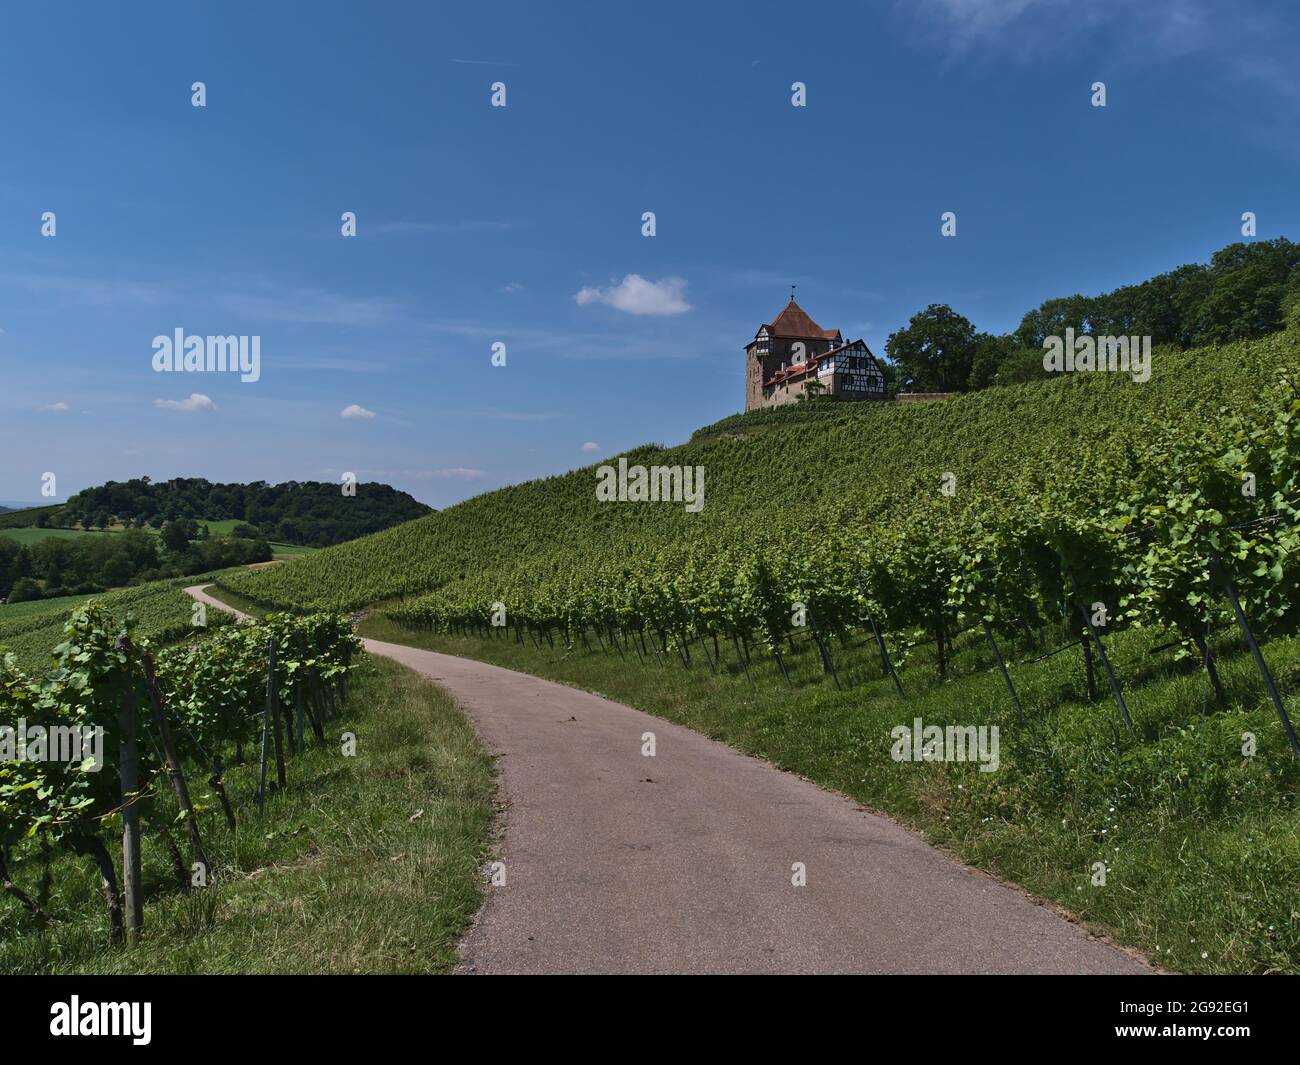 Disminución de la perspectiva de la carretera agrícola que conduce a través de viñedos con hojas verdes por debajo del histórico castillo medieval Burg Wildeck en Alemania. Foto de stock